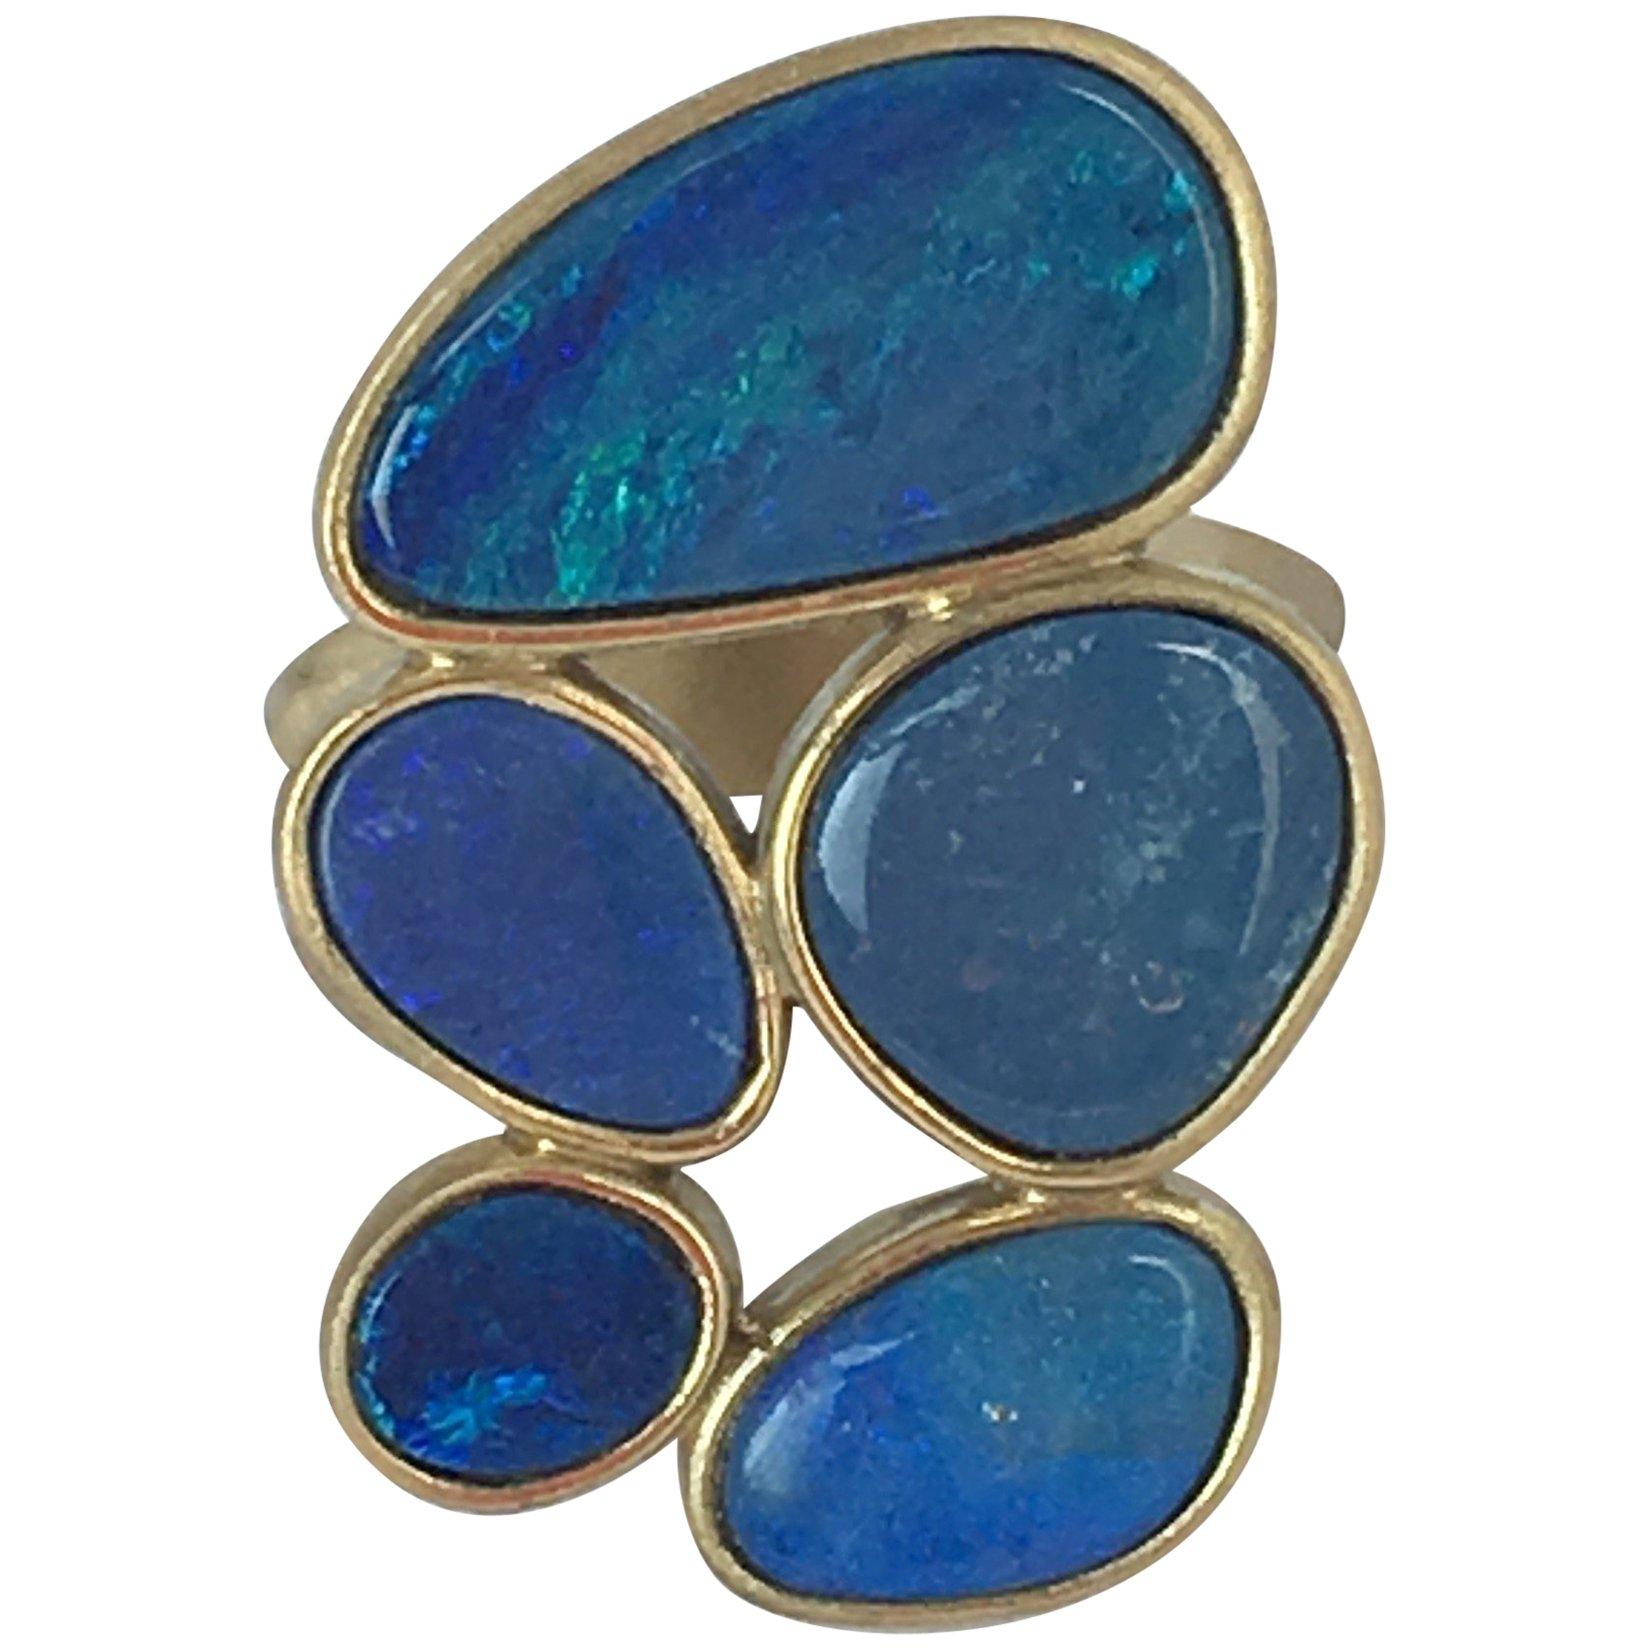  Australian Blu Opal Doublette 18 Karat Gold Ring For Sale